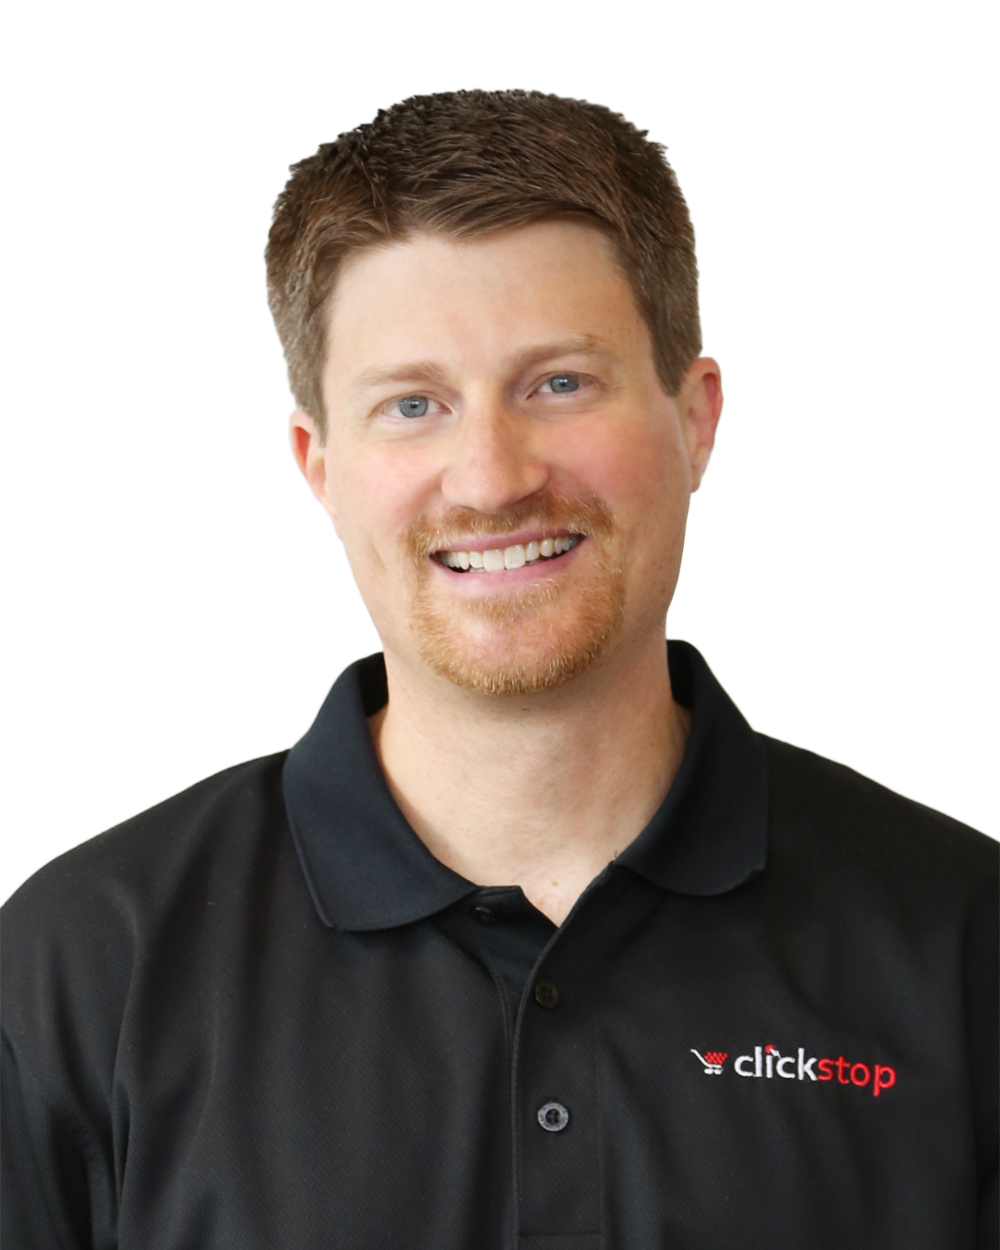 Todd Kuennen, CFO, Clickstop